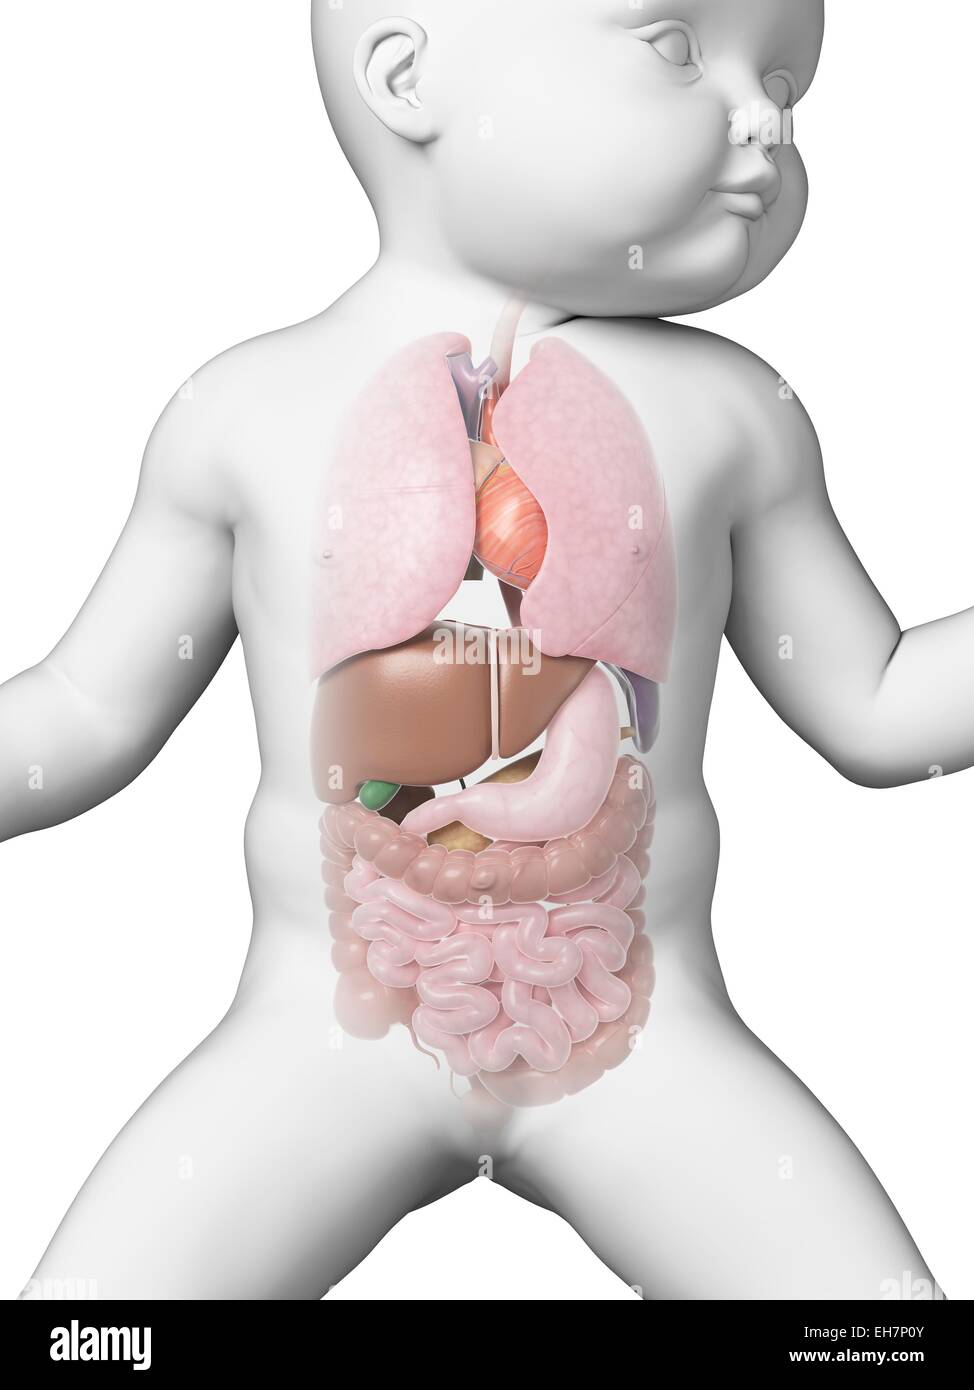 Печень ребенка 6 лет. Внутренние органы новорожденного. Пищеварительная система младенца. Строение внутренних органов у новорожденного.